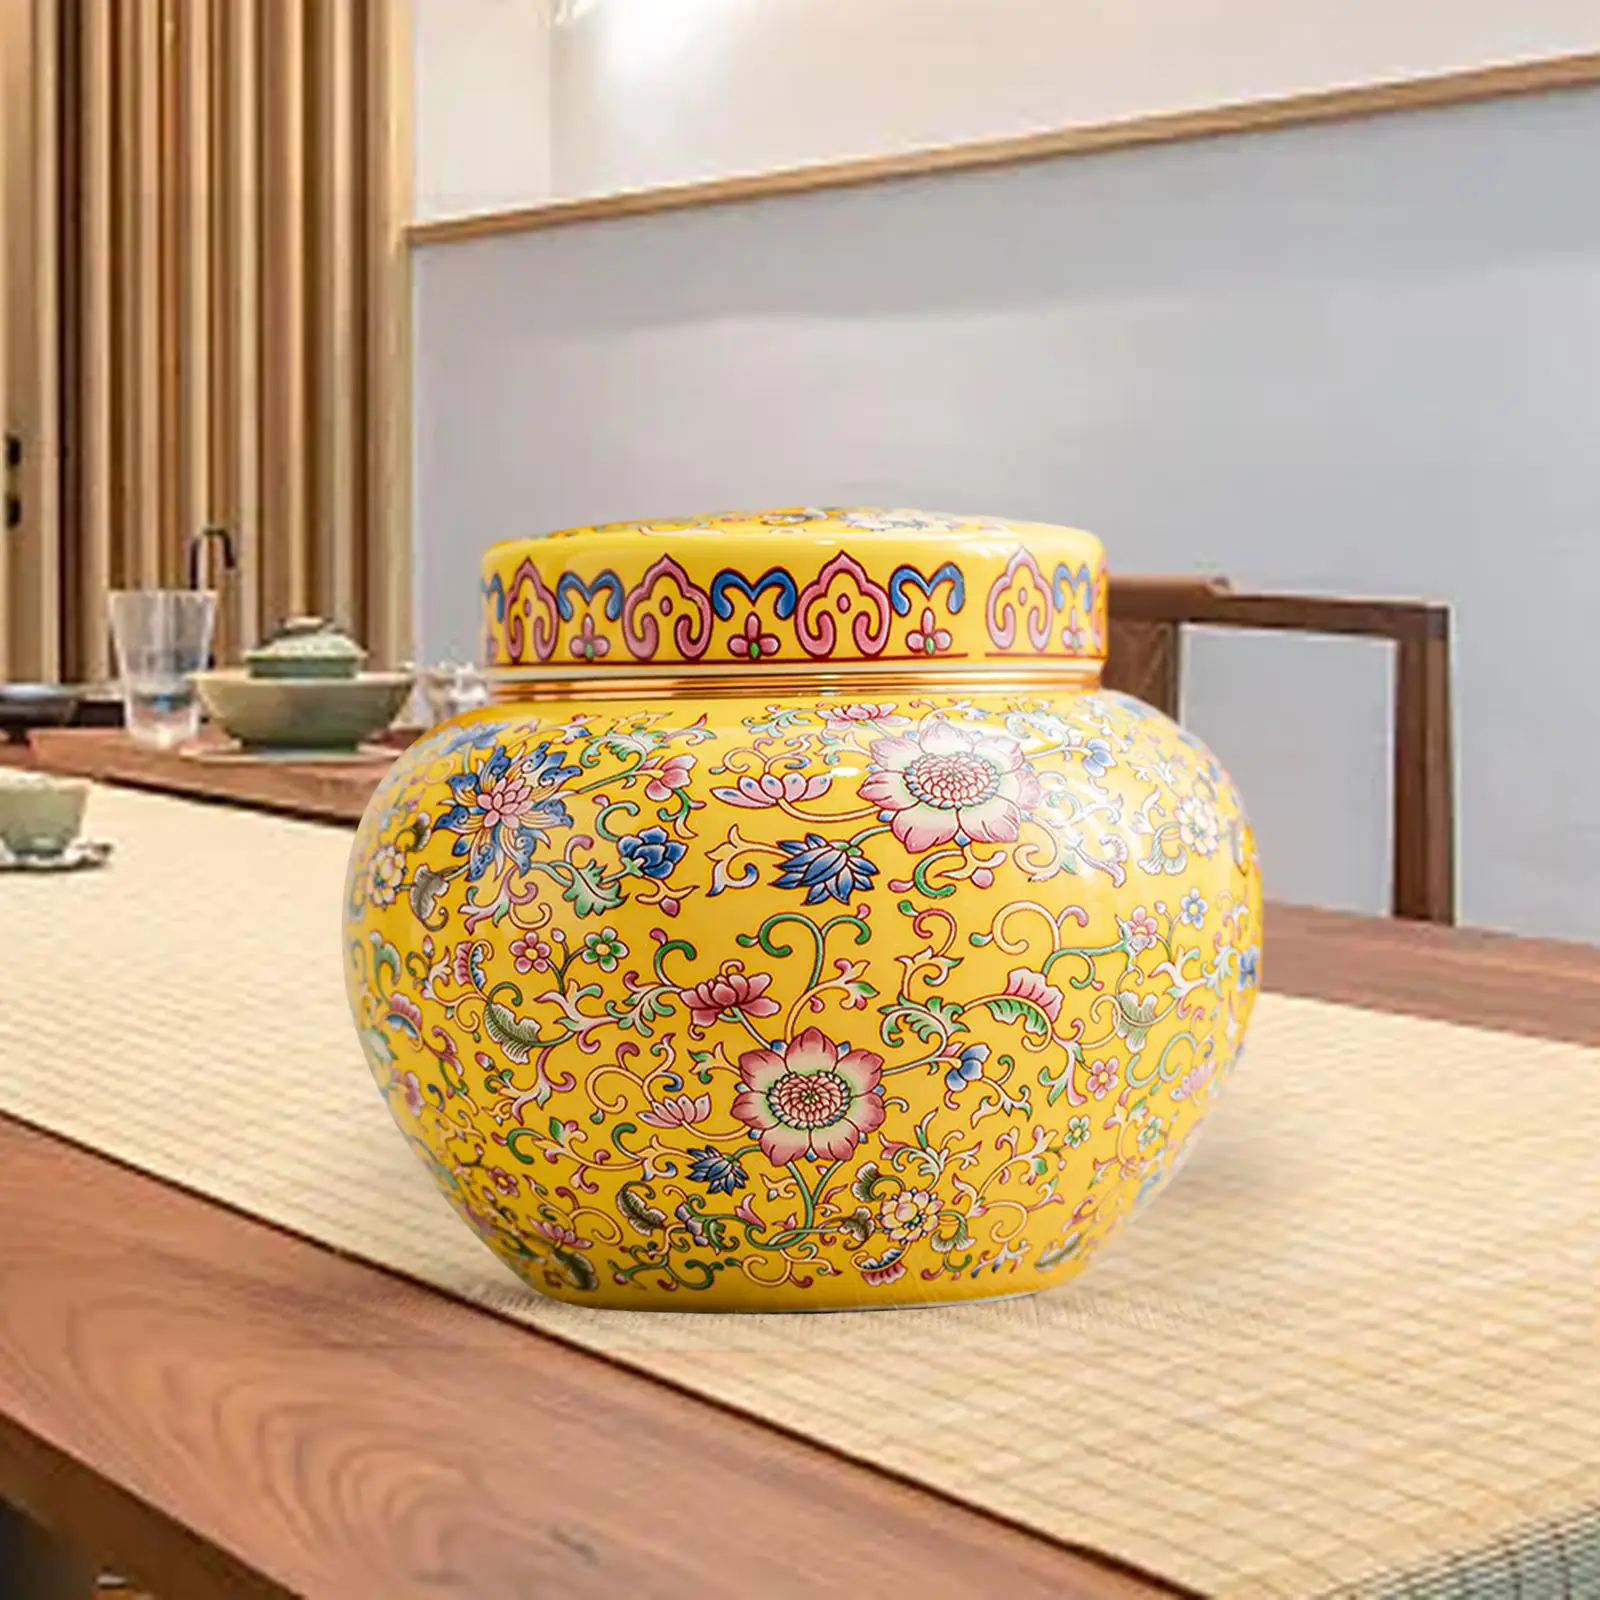 Ceramic Ginger Jar Vase with Lid Flower Arrangement Chinese Style Desktop Tea